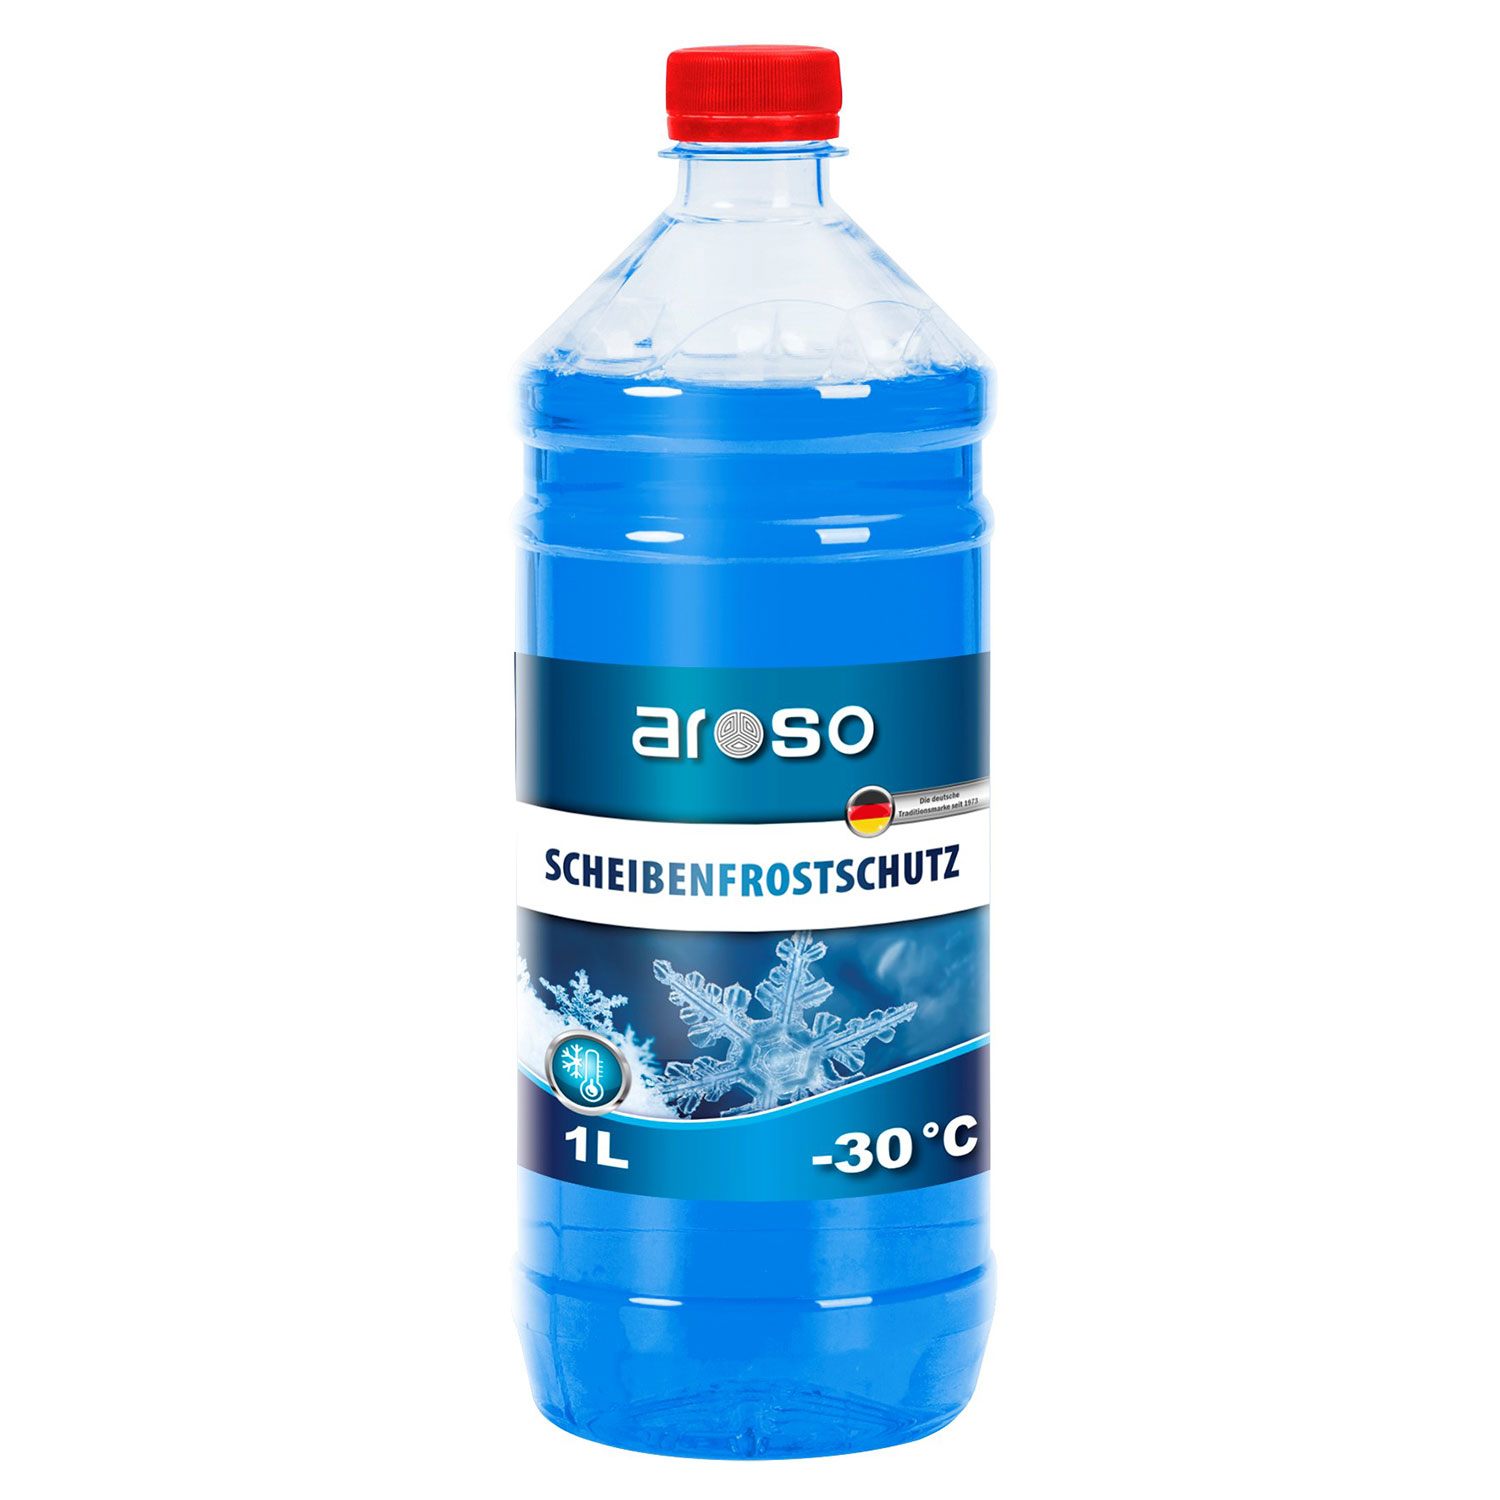 5 L Premium Scheiben Frostschutz -60 Grad Konzentrat für KFZ